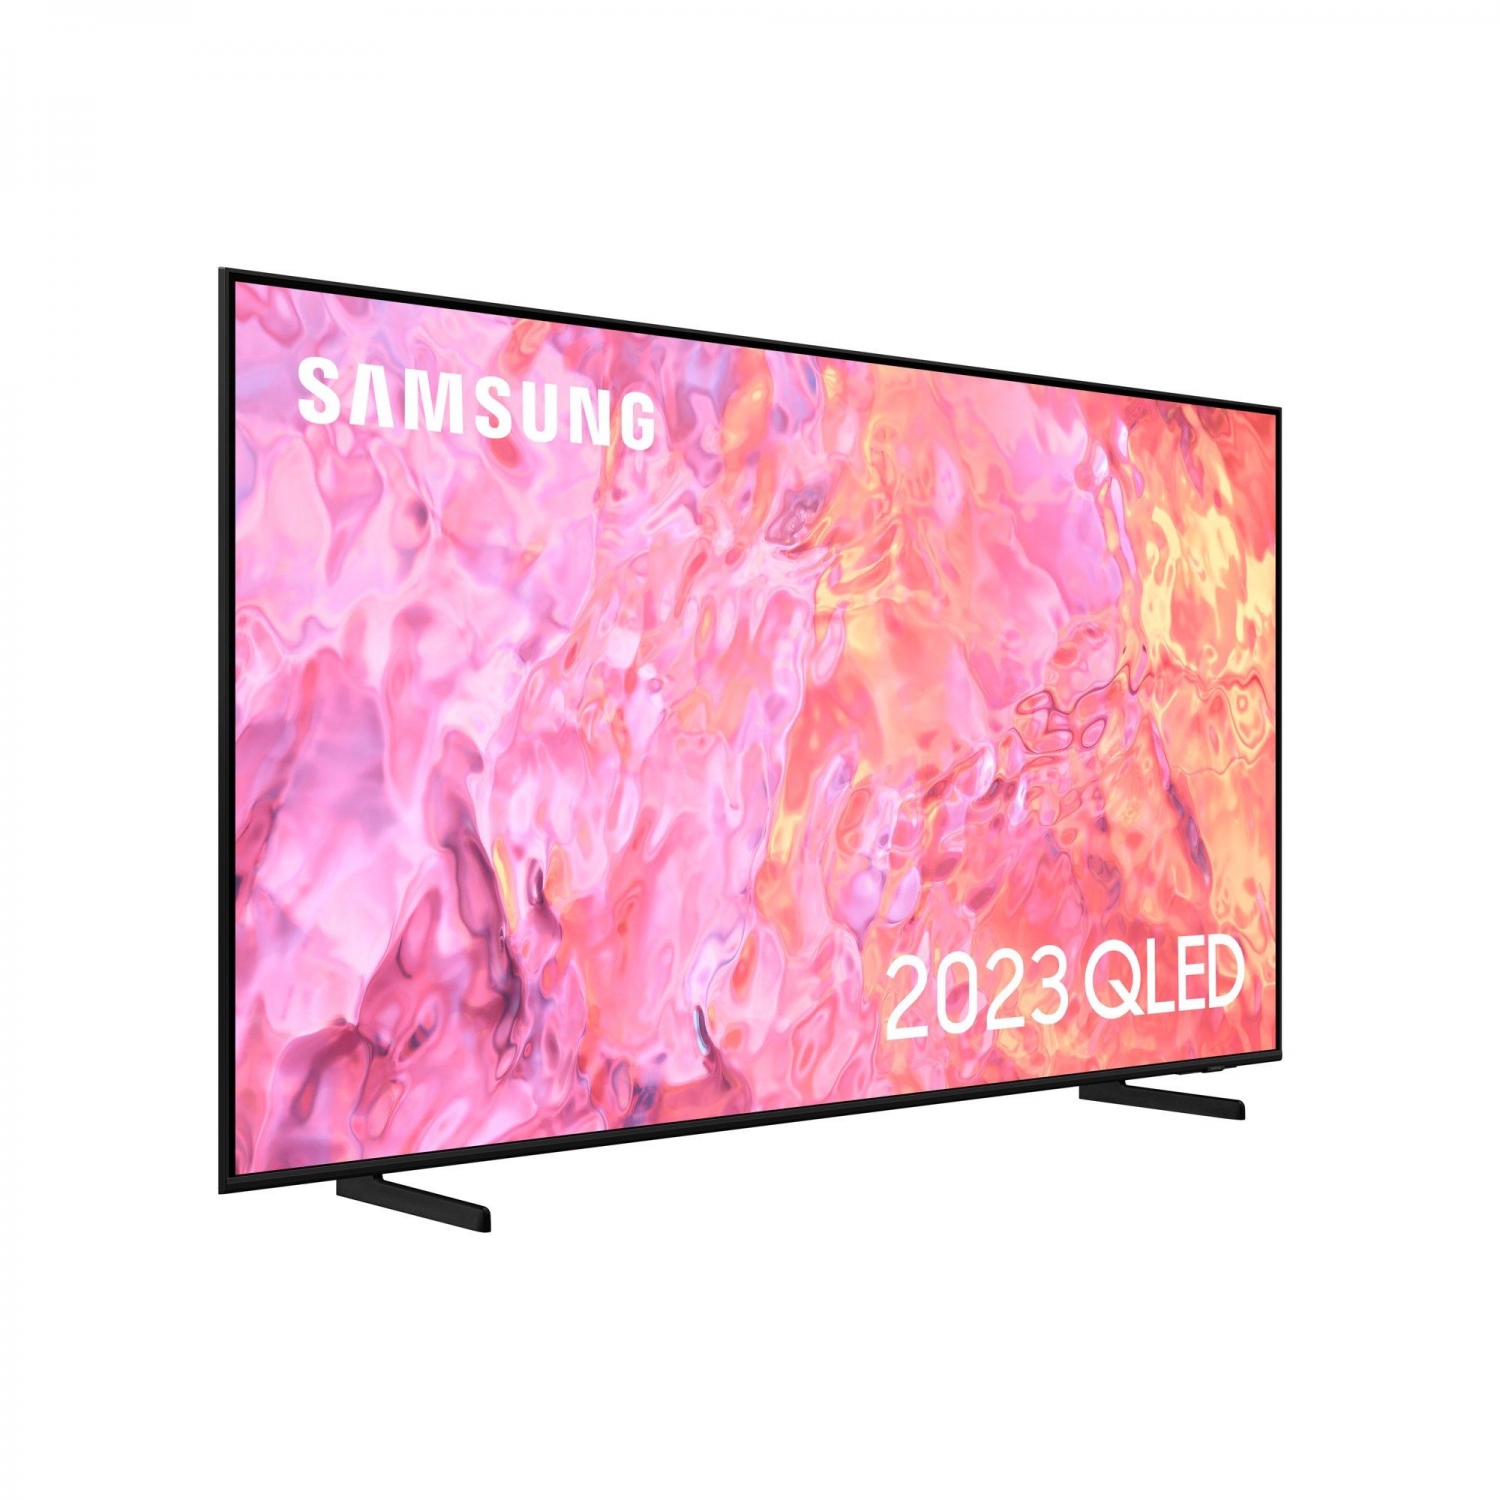 Samsung QE43Q60CAUXXU QLED 4K HD TV - 3